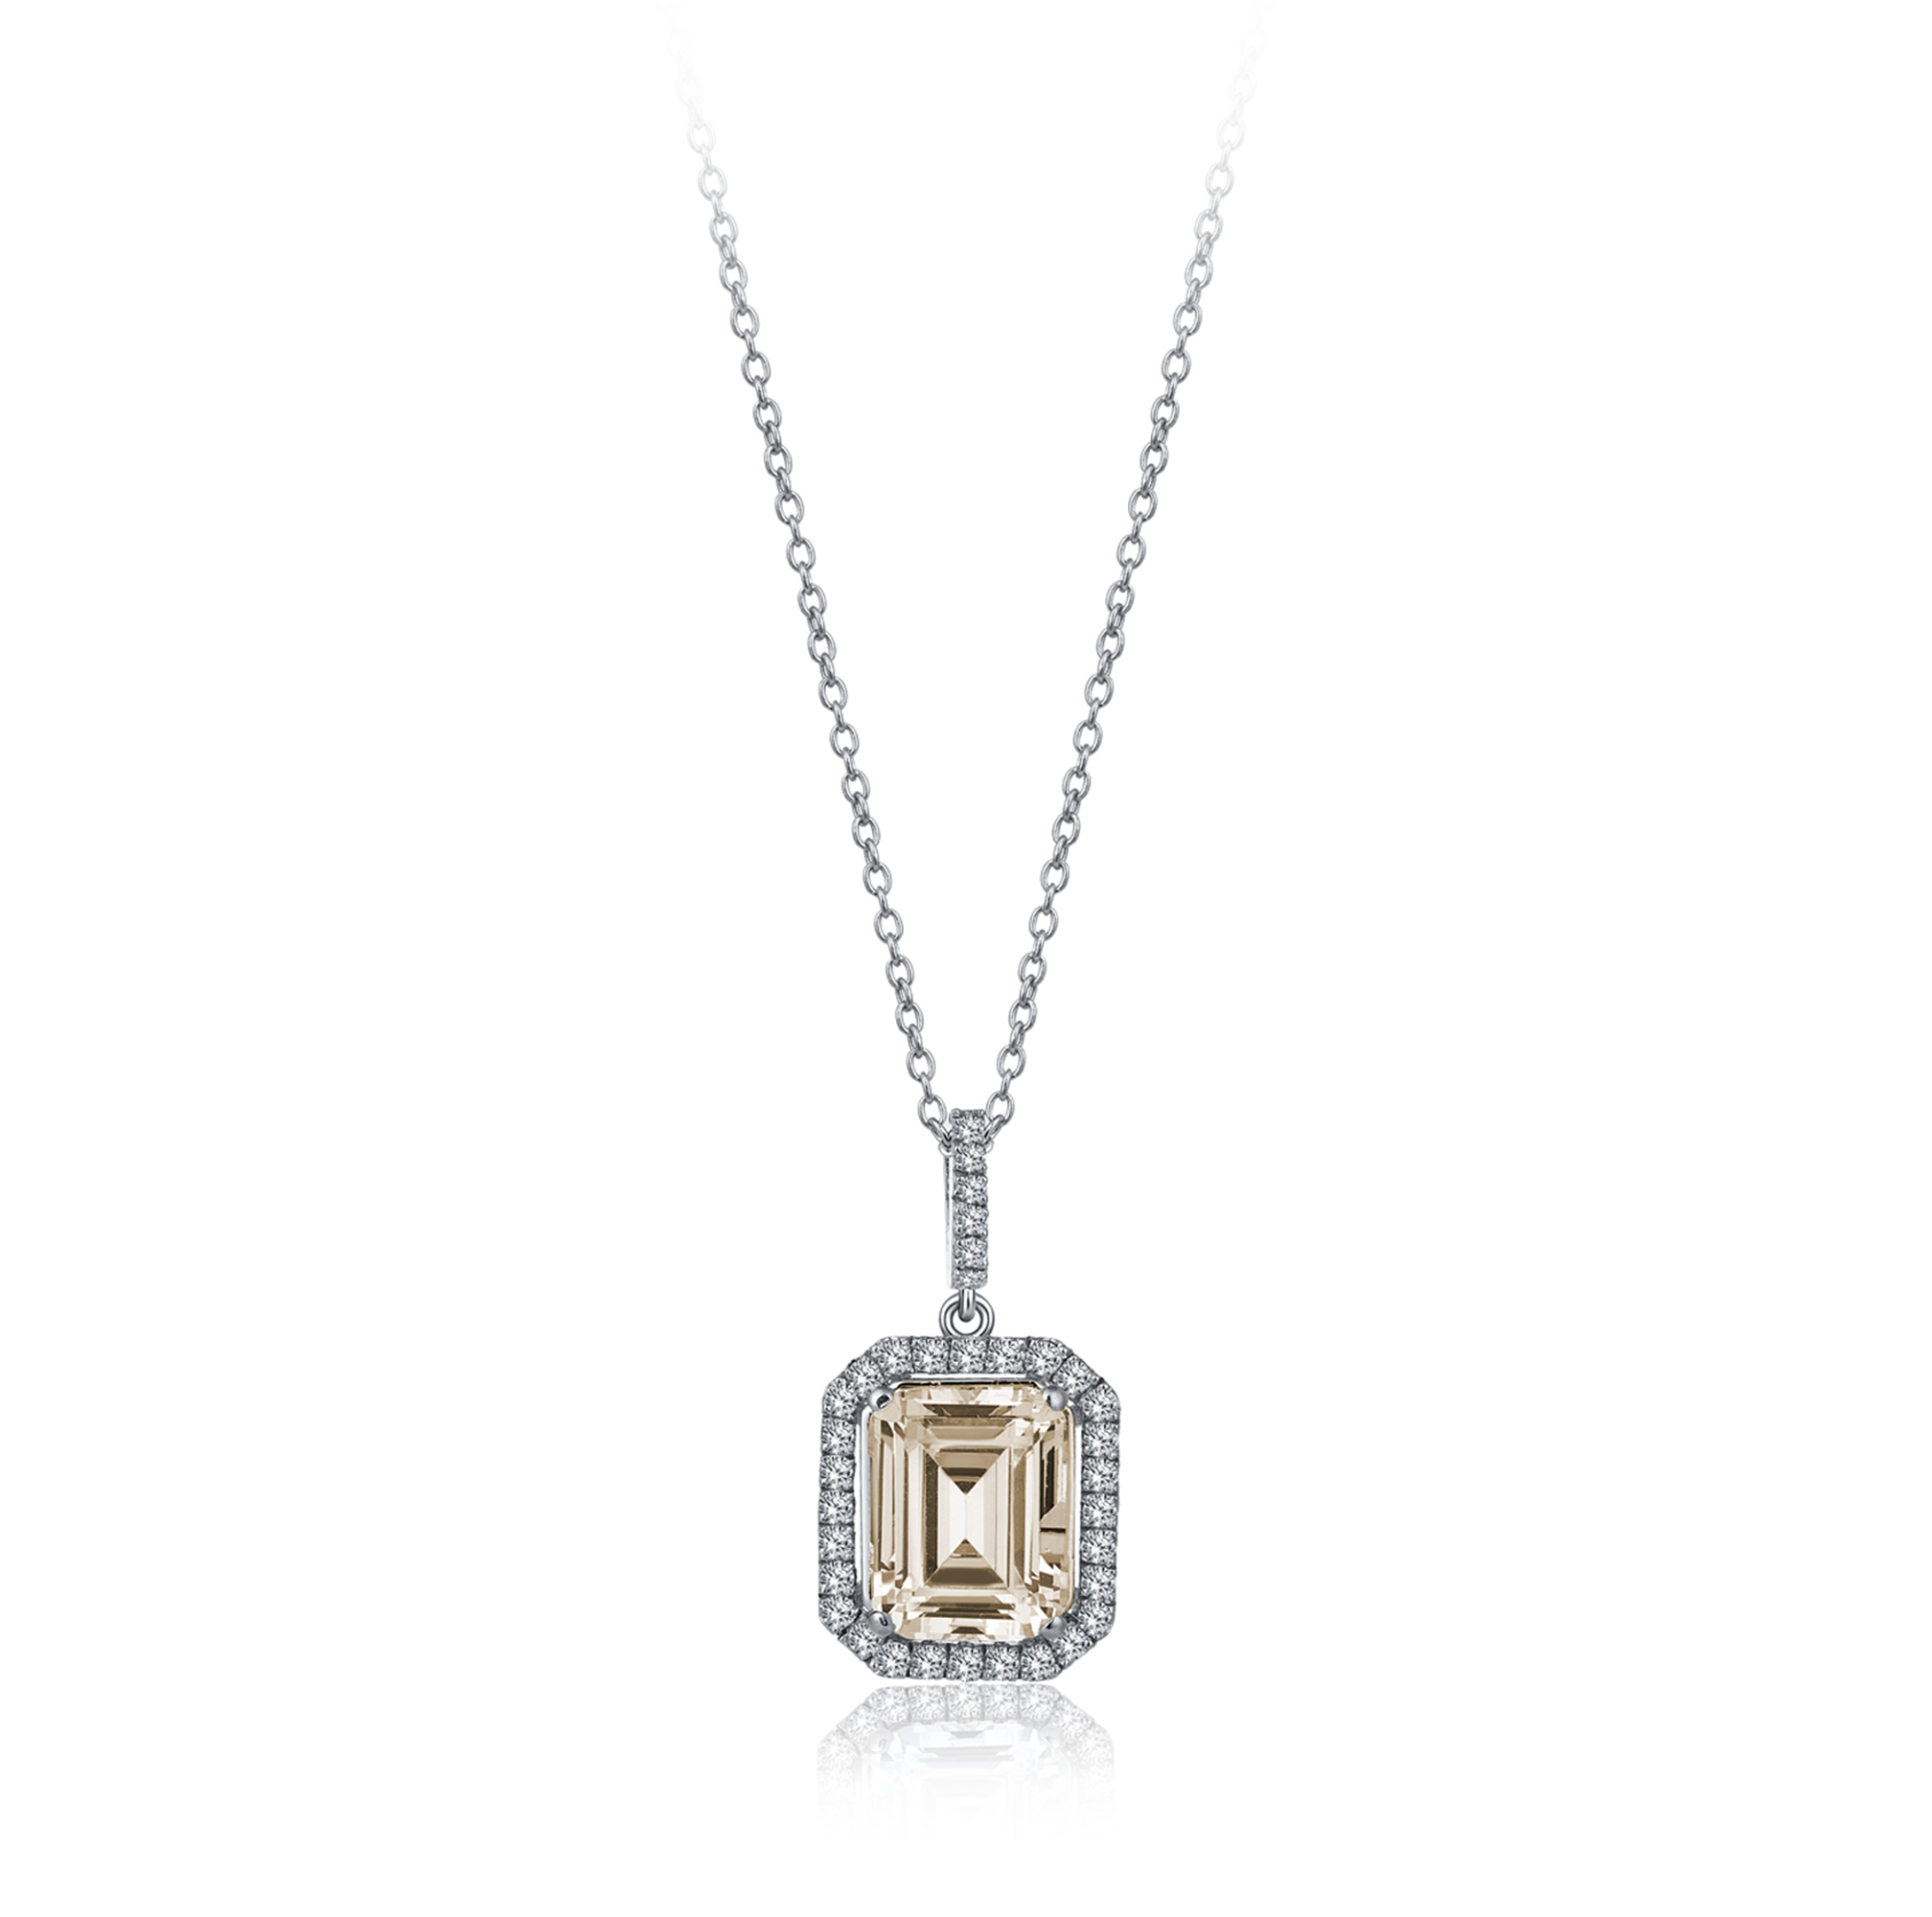 4 Karat Diamond Hybrid Gold Necklace